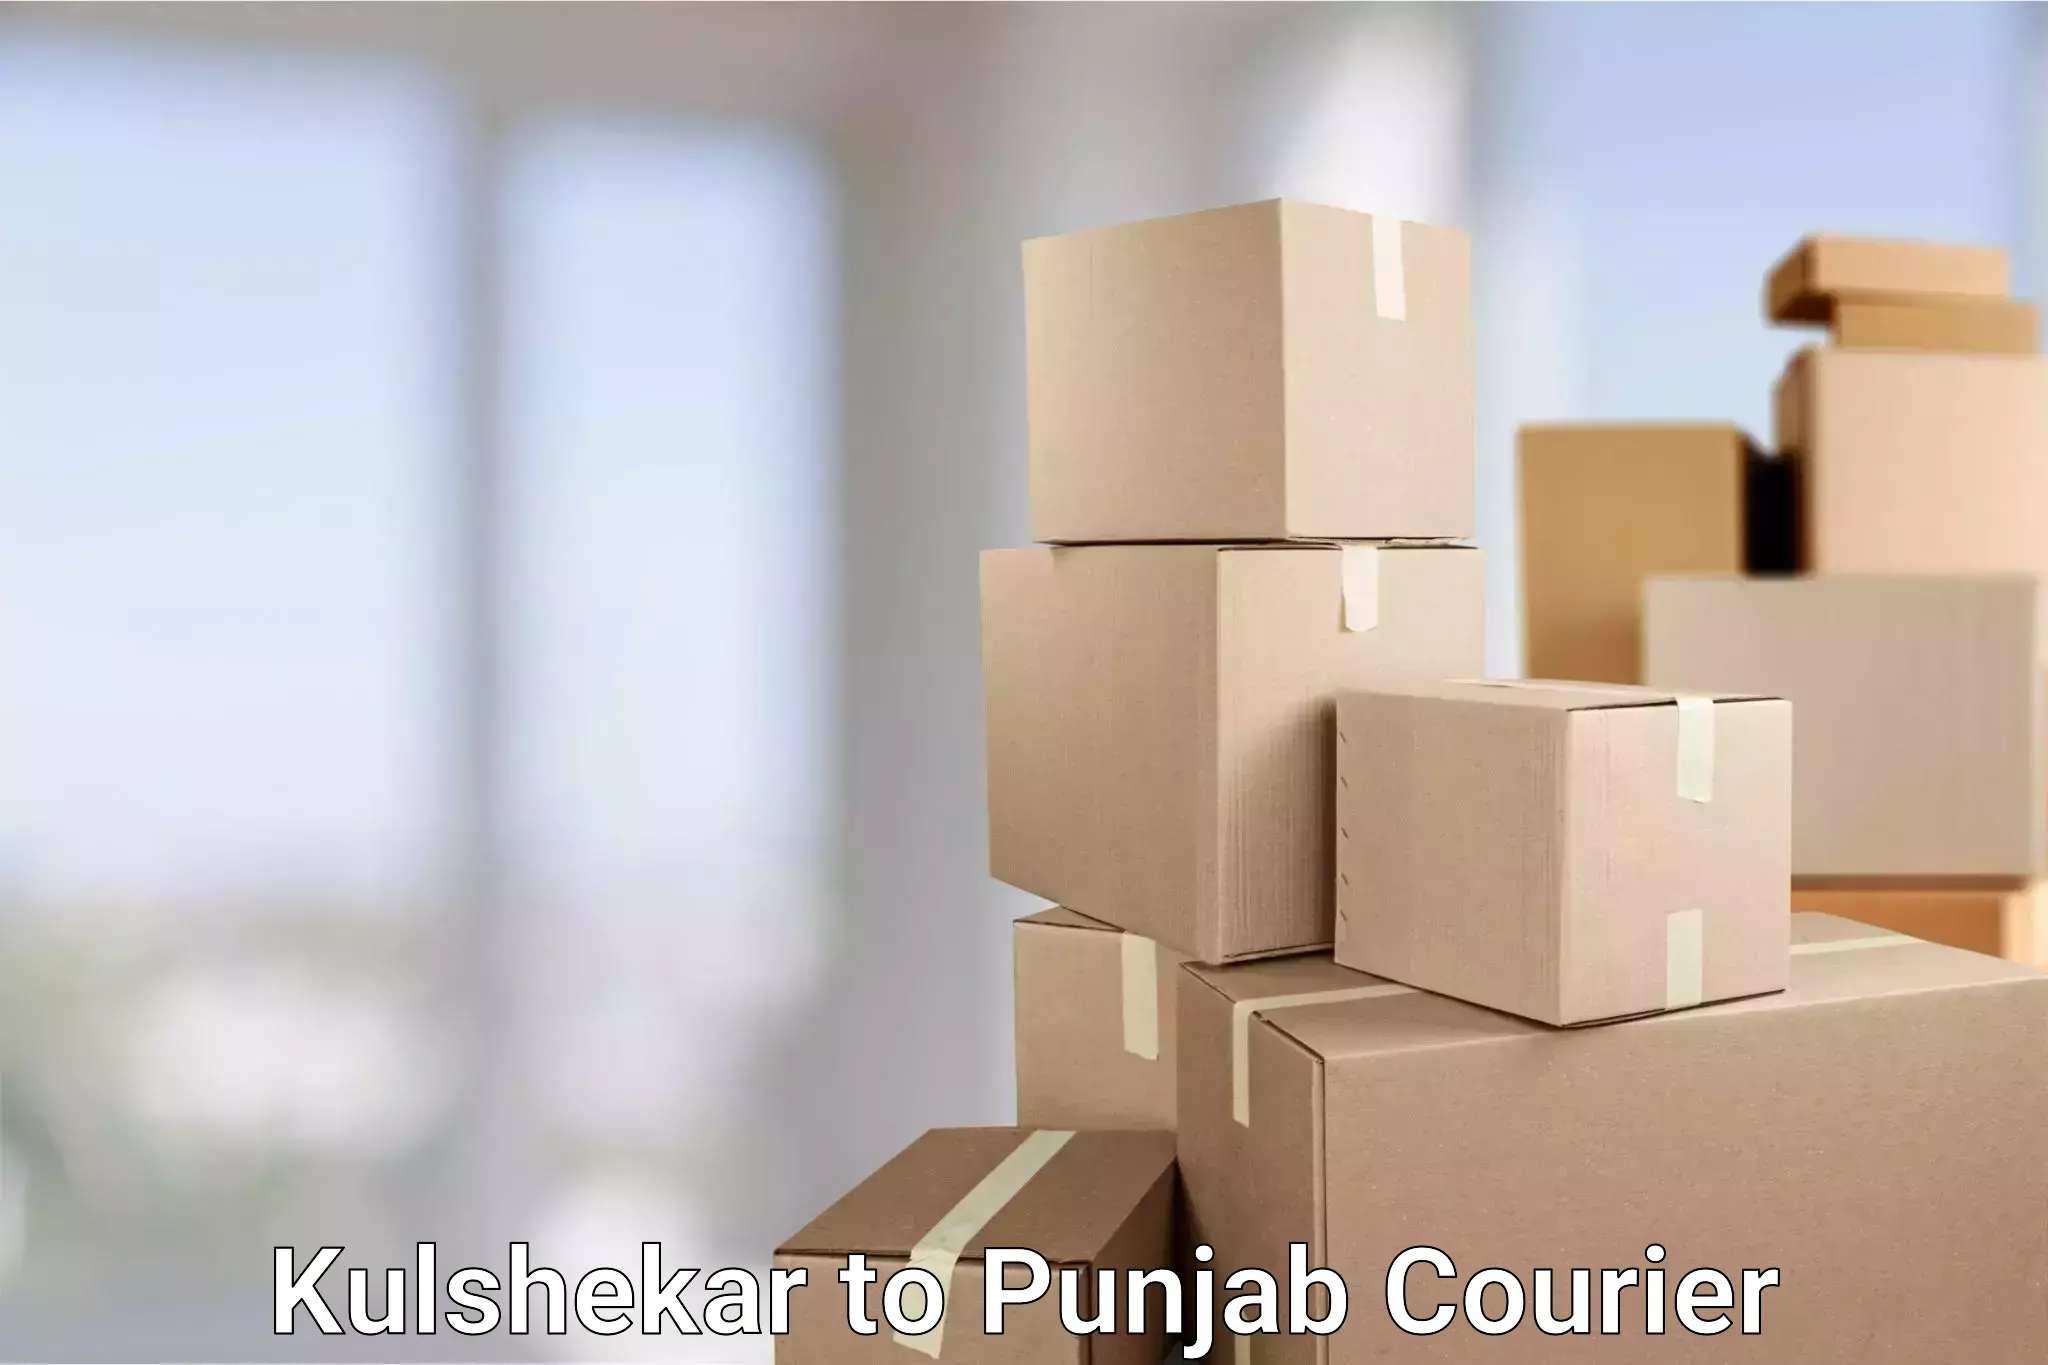 Smart shipping technology Kulshekar to Punjab